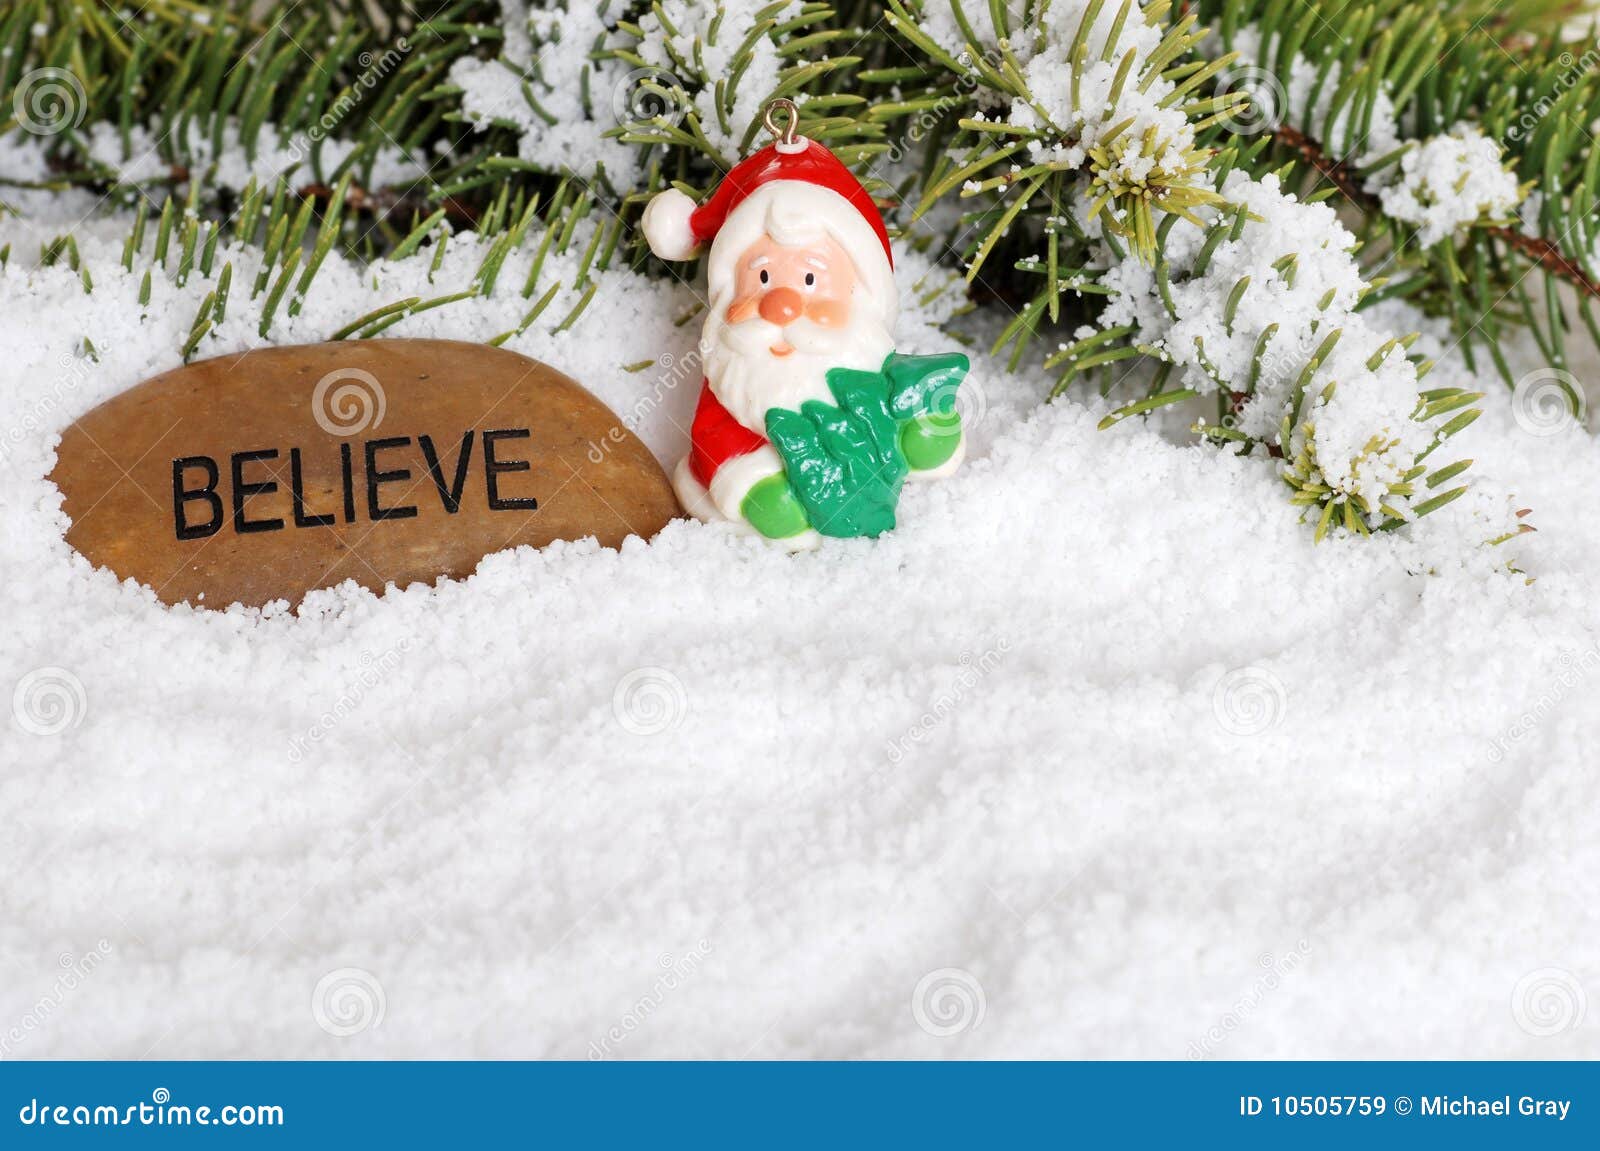 Believe In Santa Downloads